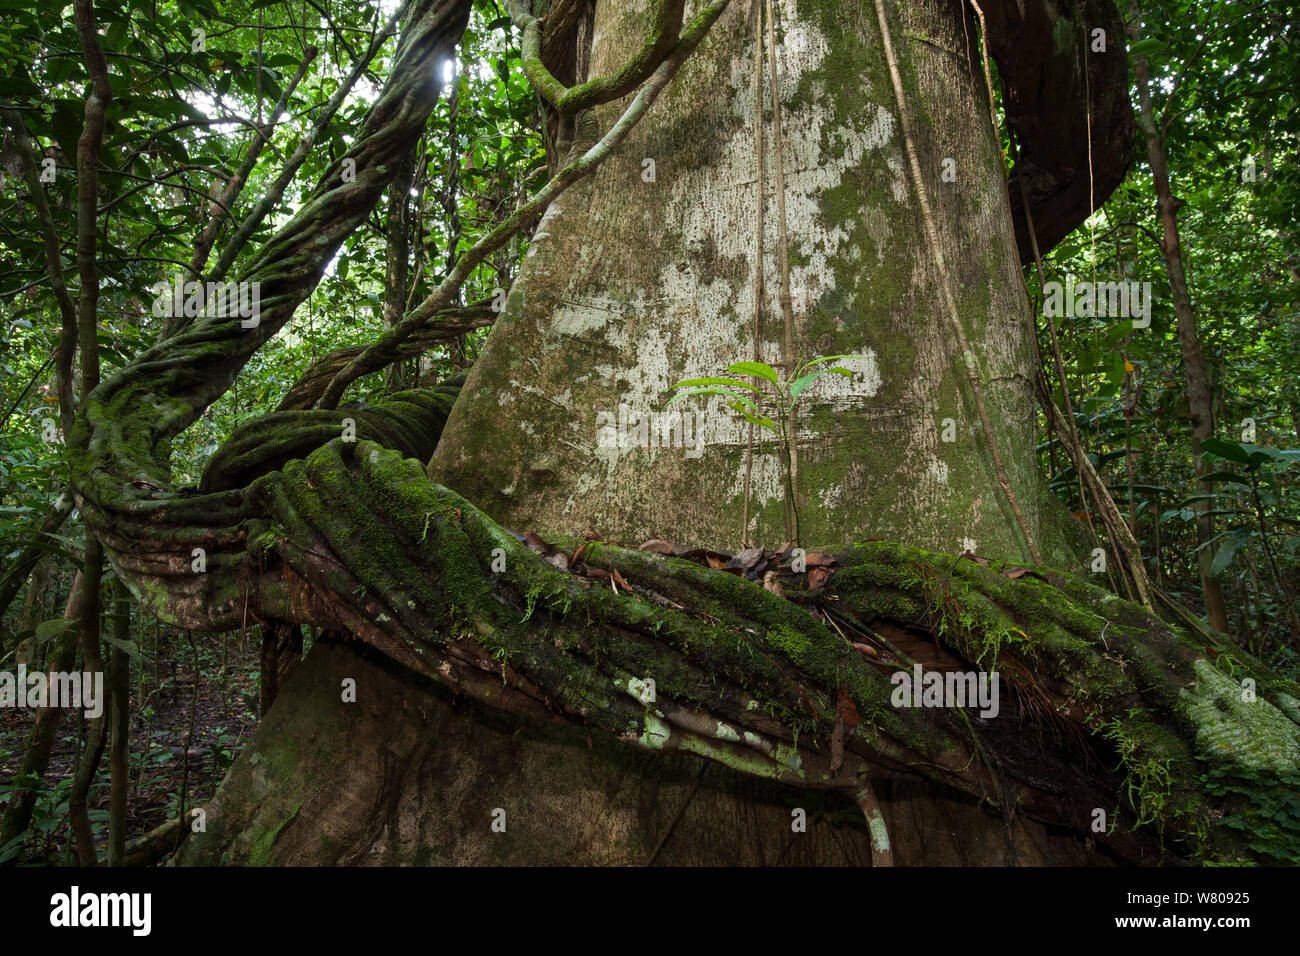 Liana épais s'élevant autour du tronc d'un arbre, le Parc National de Way Kambas, Sumatra, Indonésie. Banque D'Images